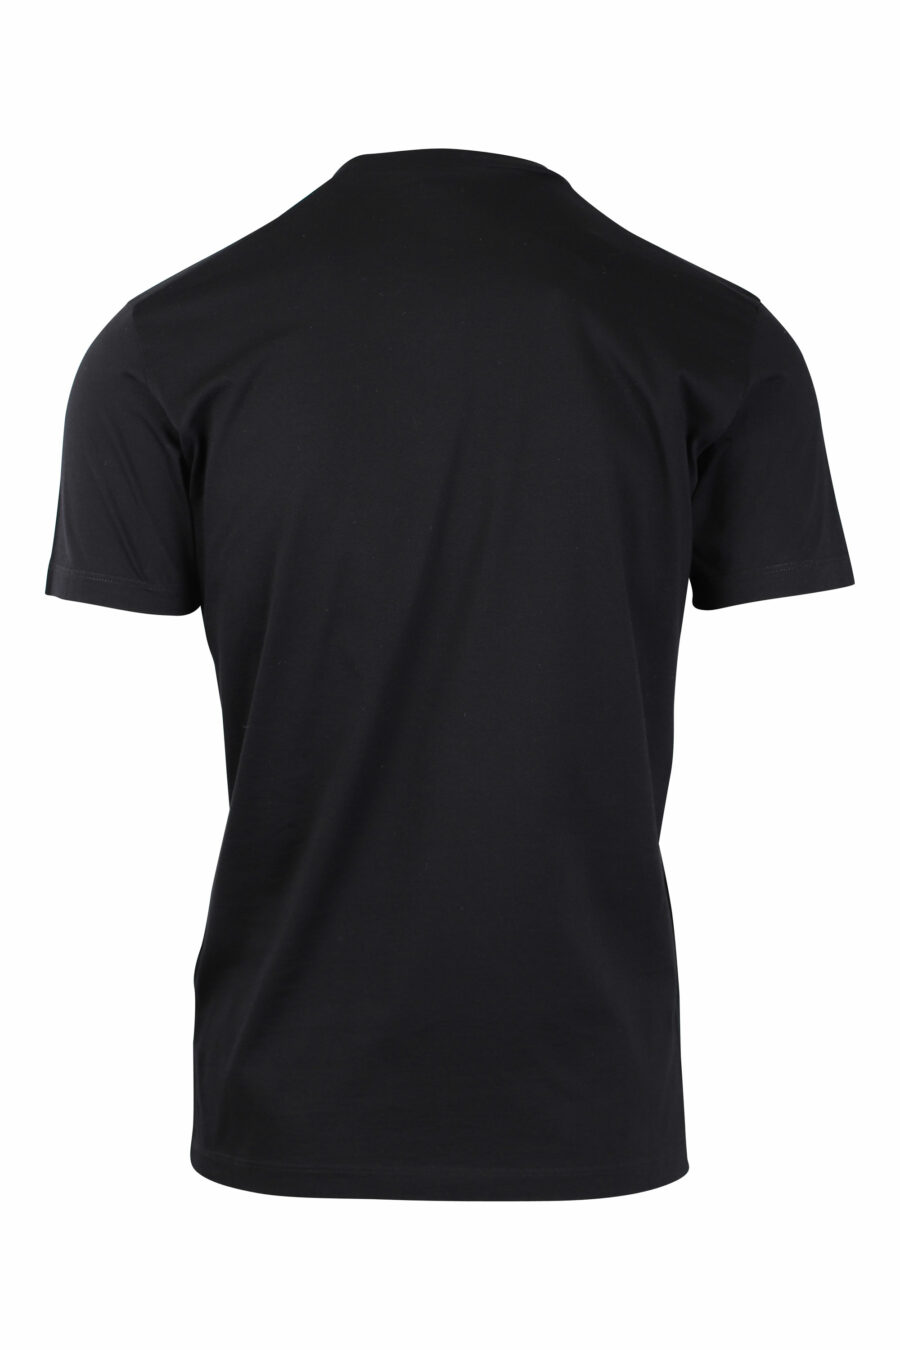 Schwarzes T-Shirt mit Bob-Marley-Aufdruck - IMG 1480